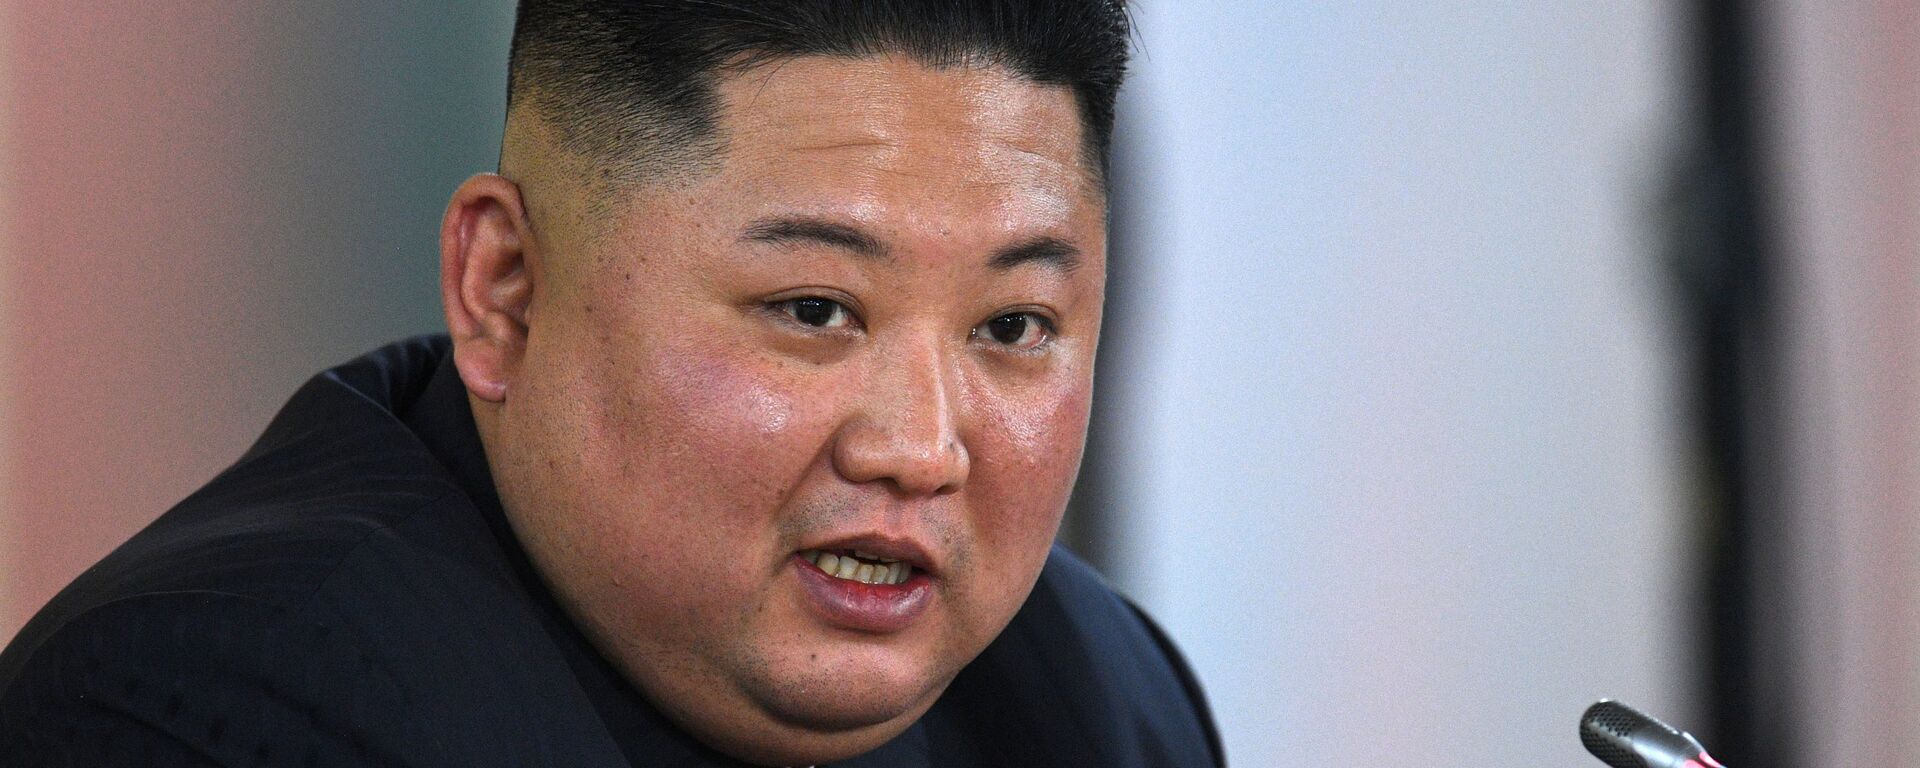 Kim Jong-un, el líder norcoreano - Sputnik Mundo, 1920, 29.03.2021